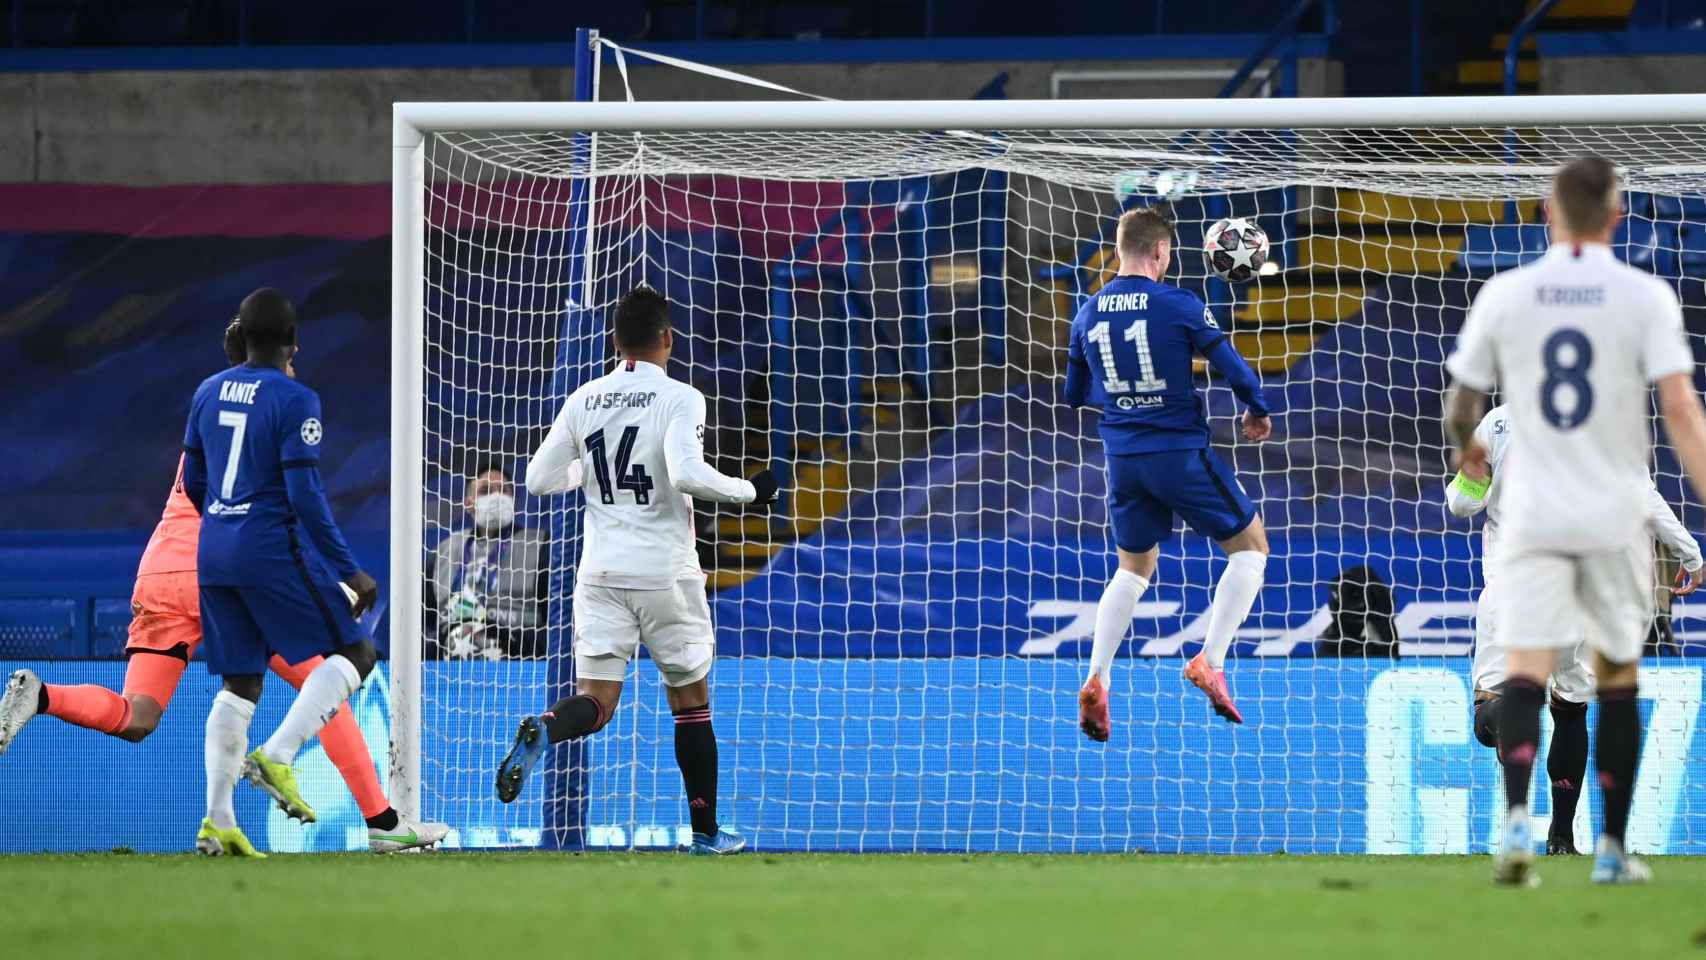 Timo Werner remata de cabeza un lanzamiento que había tocado en el larguero y marca gol para el Chelsea